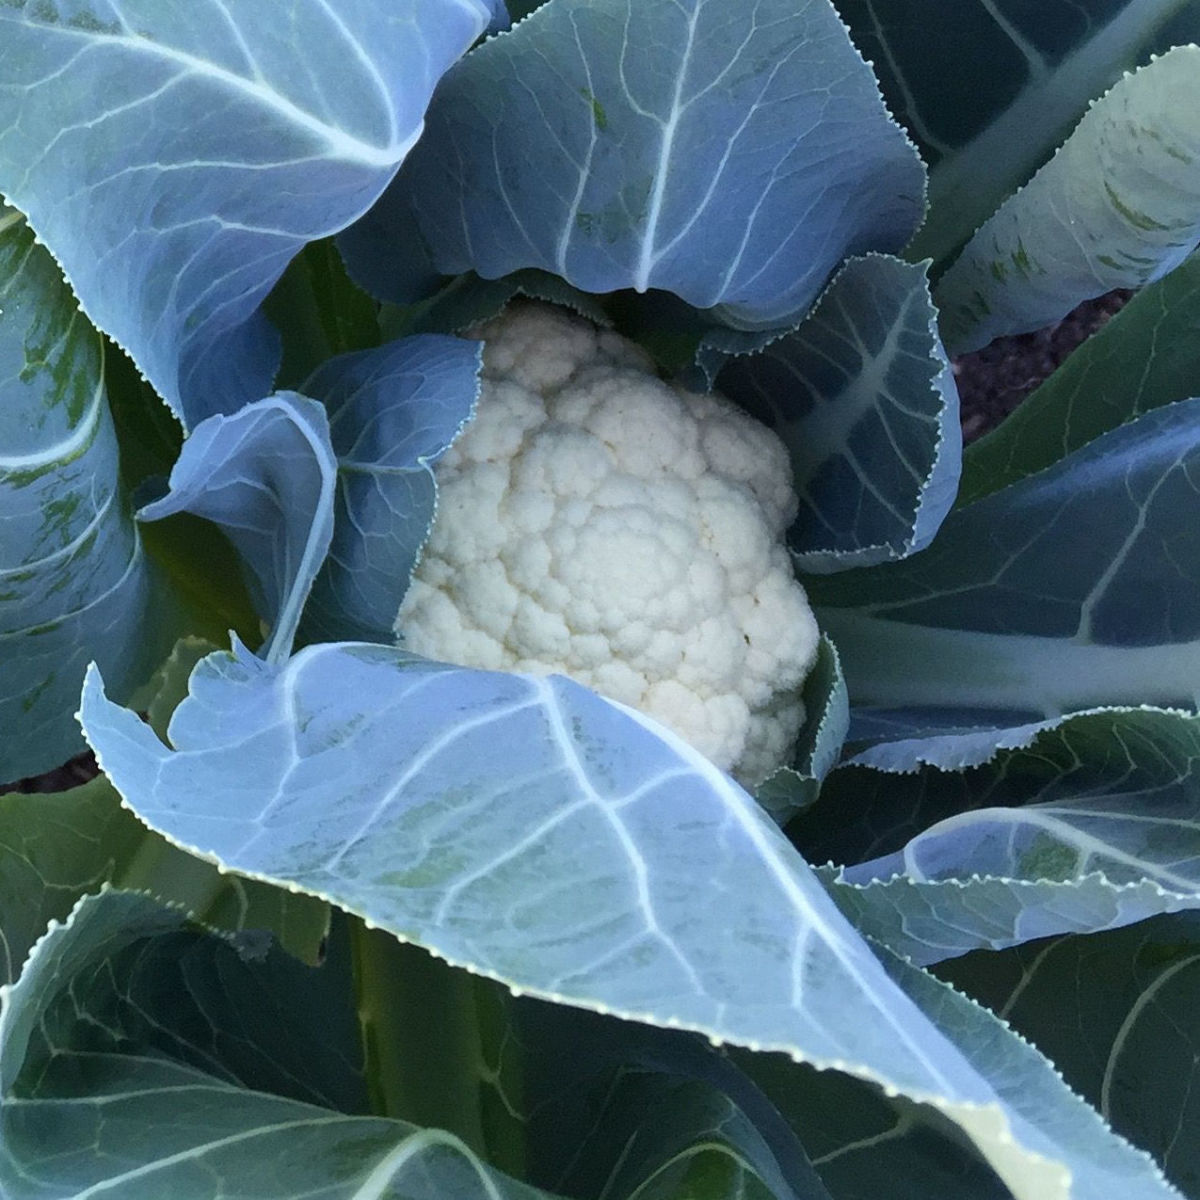 One of my baby cauliflower heads, just beginning to mature.